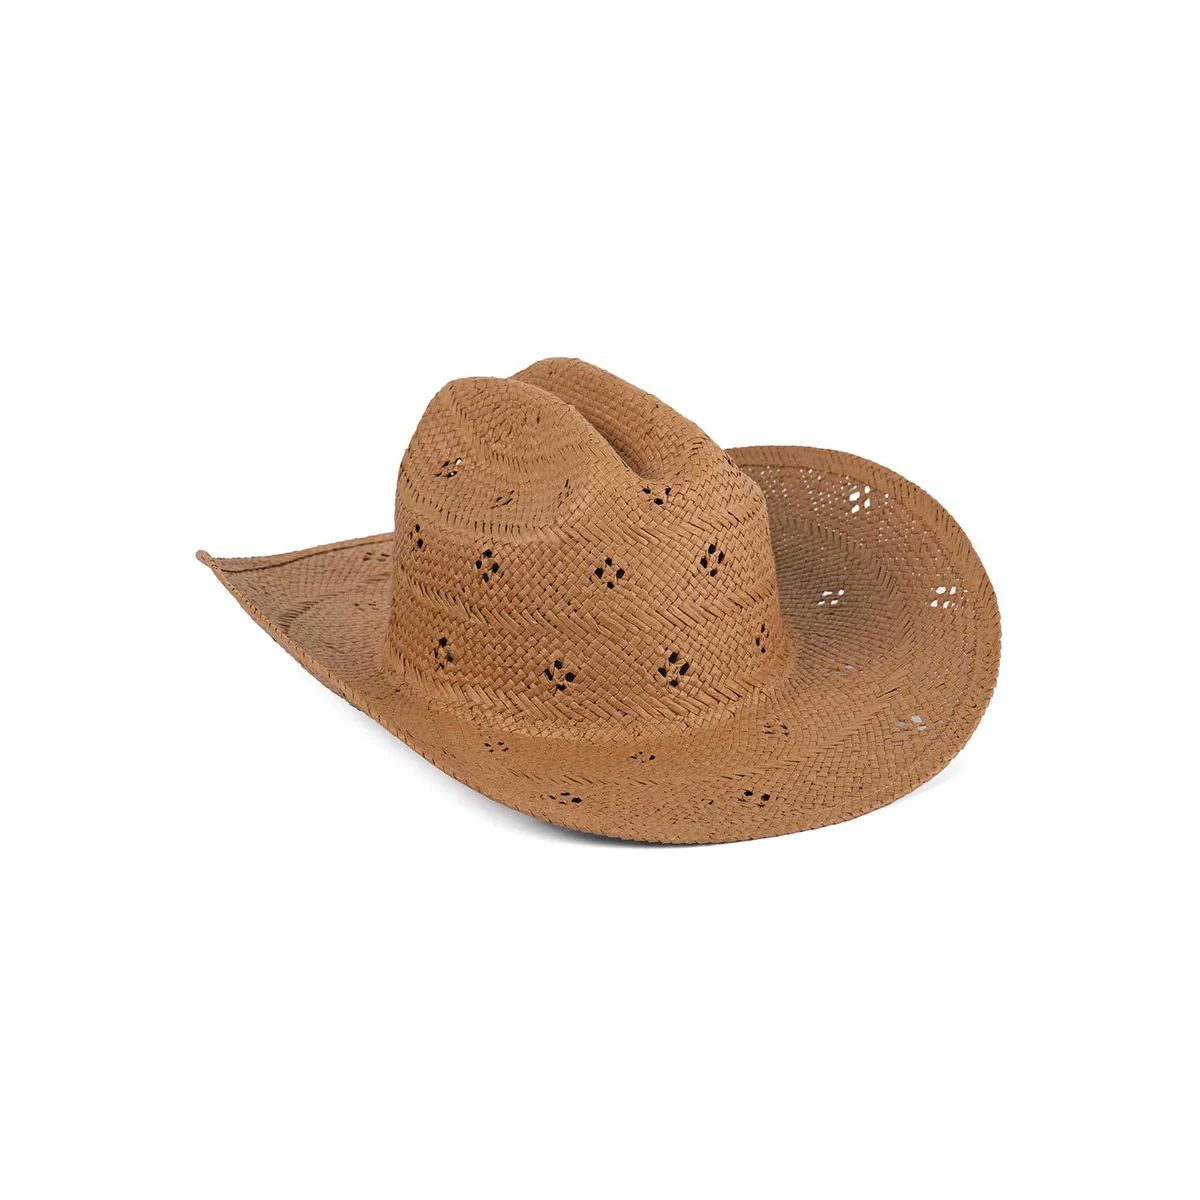 Desert Rose - Straw Cowboy Hat in Tan | Lack of Color US | Lack of Color US